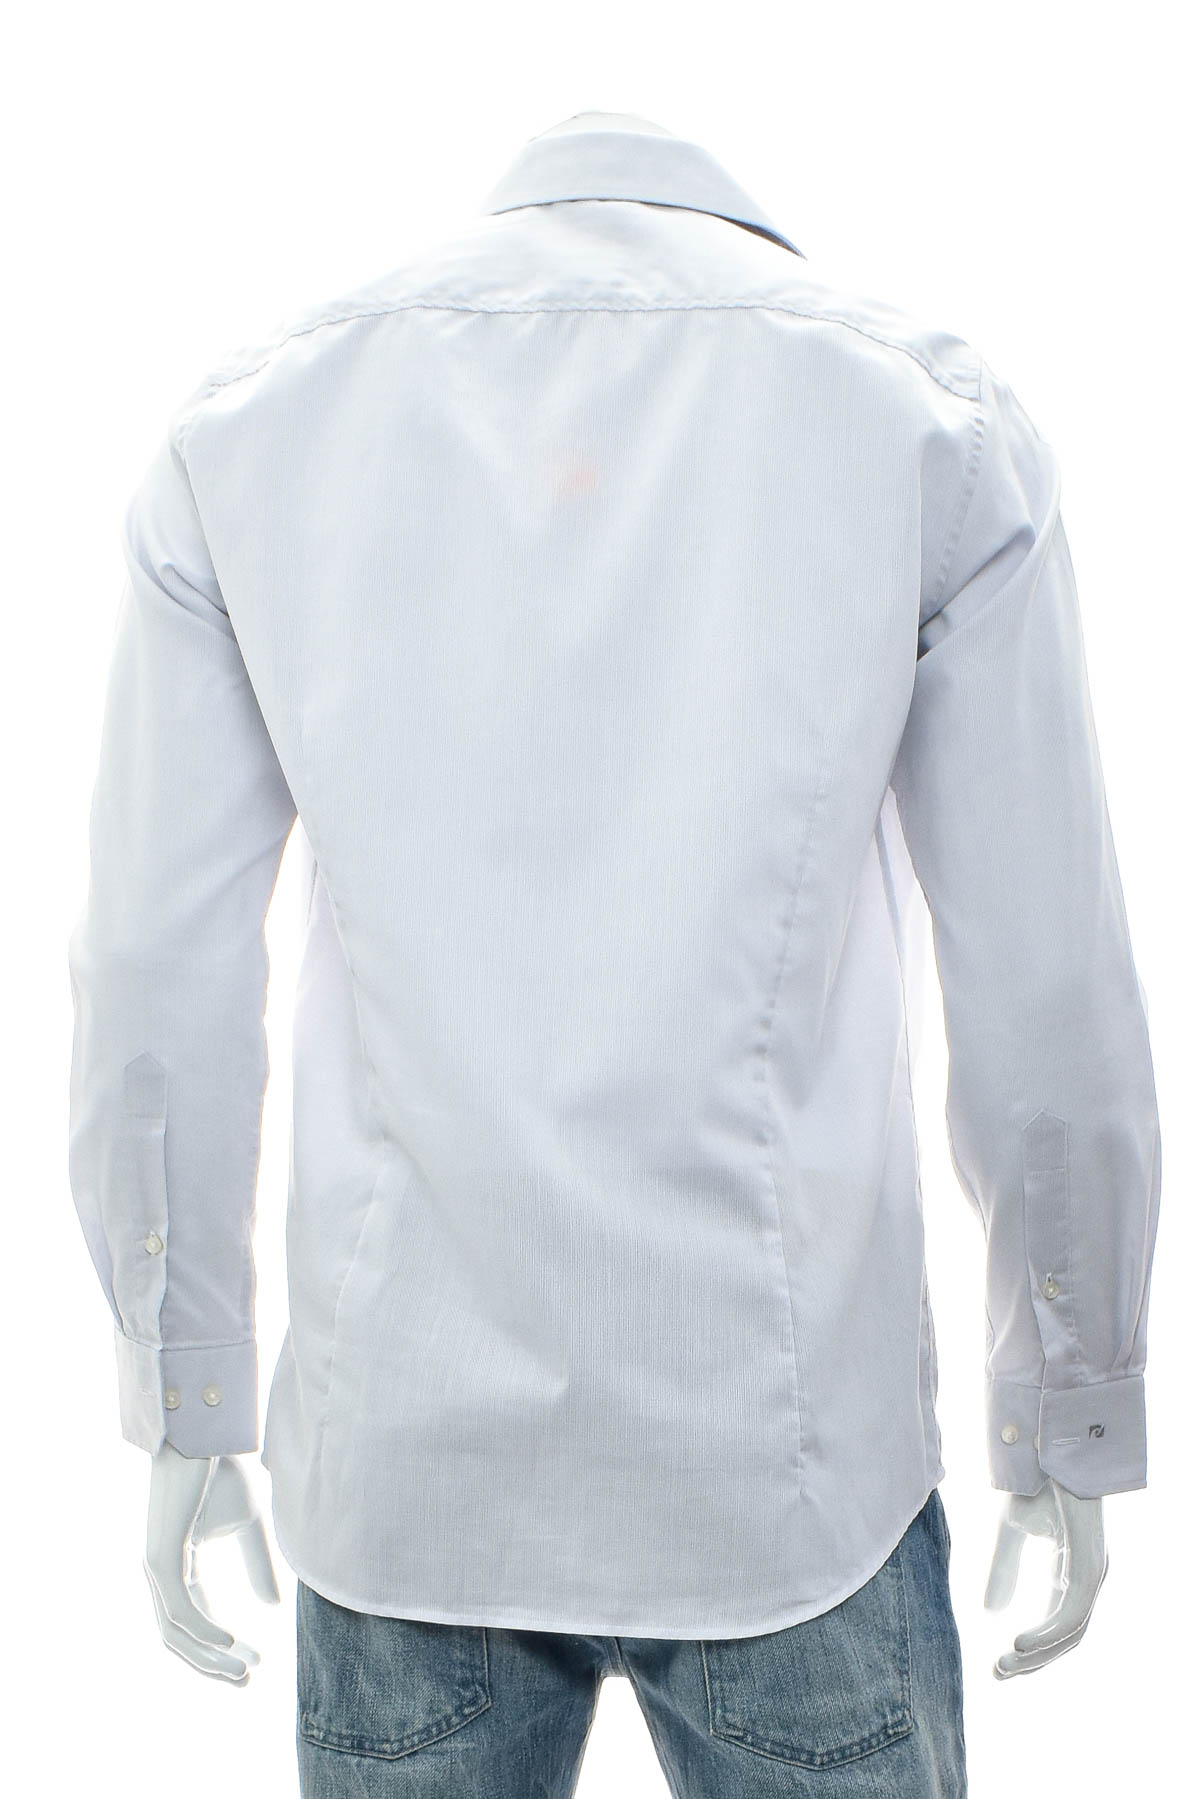 Ανδρικό πουκάμισο - Pierre Cardin - 1